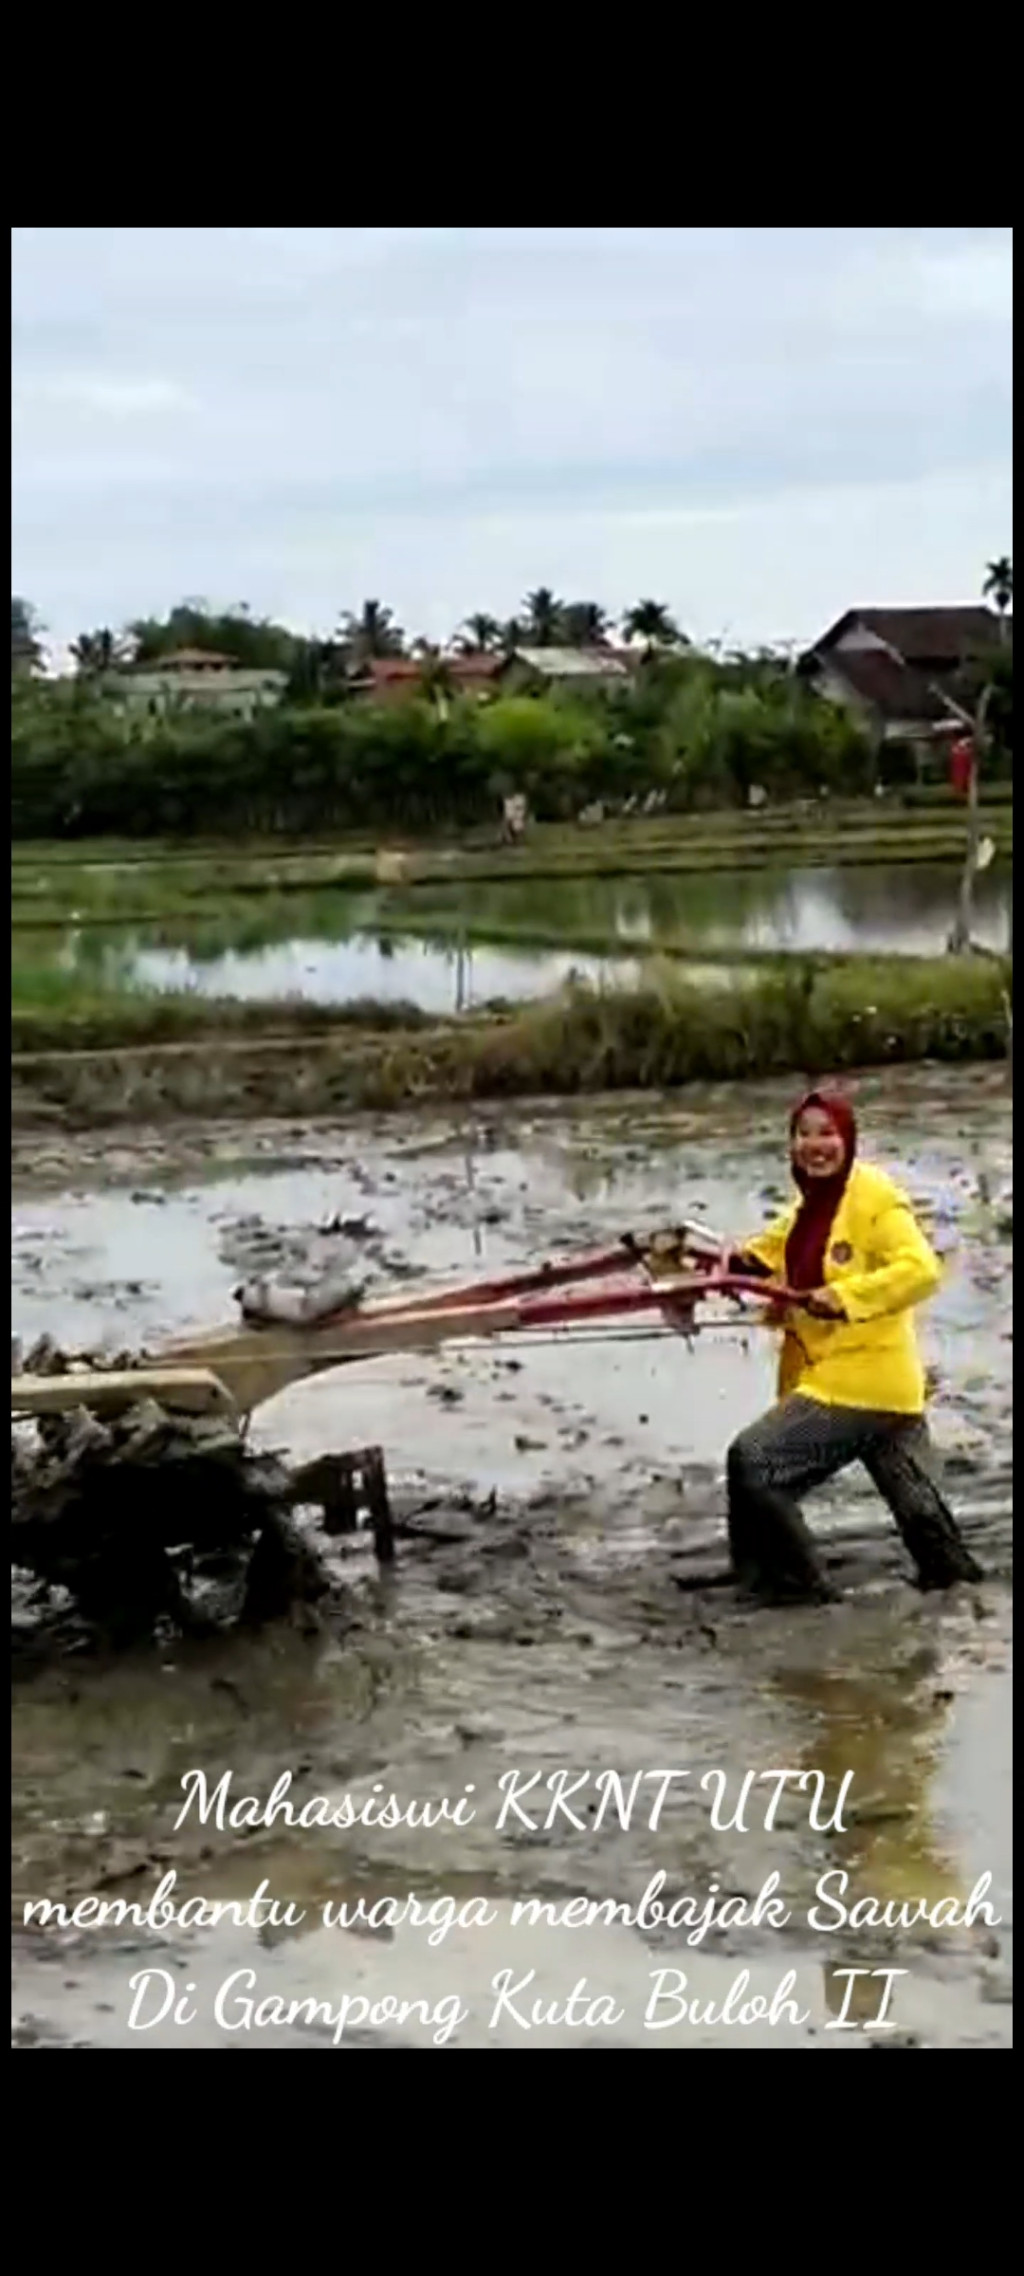 Mahasiswa KKNT UTU Membantu Warga Menggarap Sawah dengan Hand Traktor.